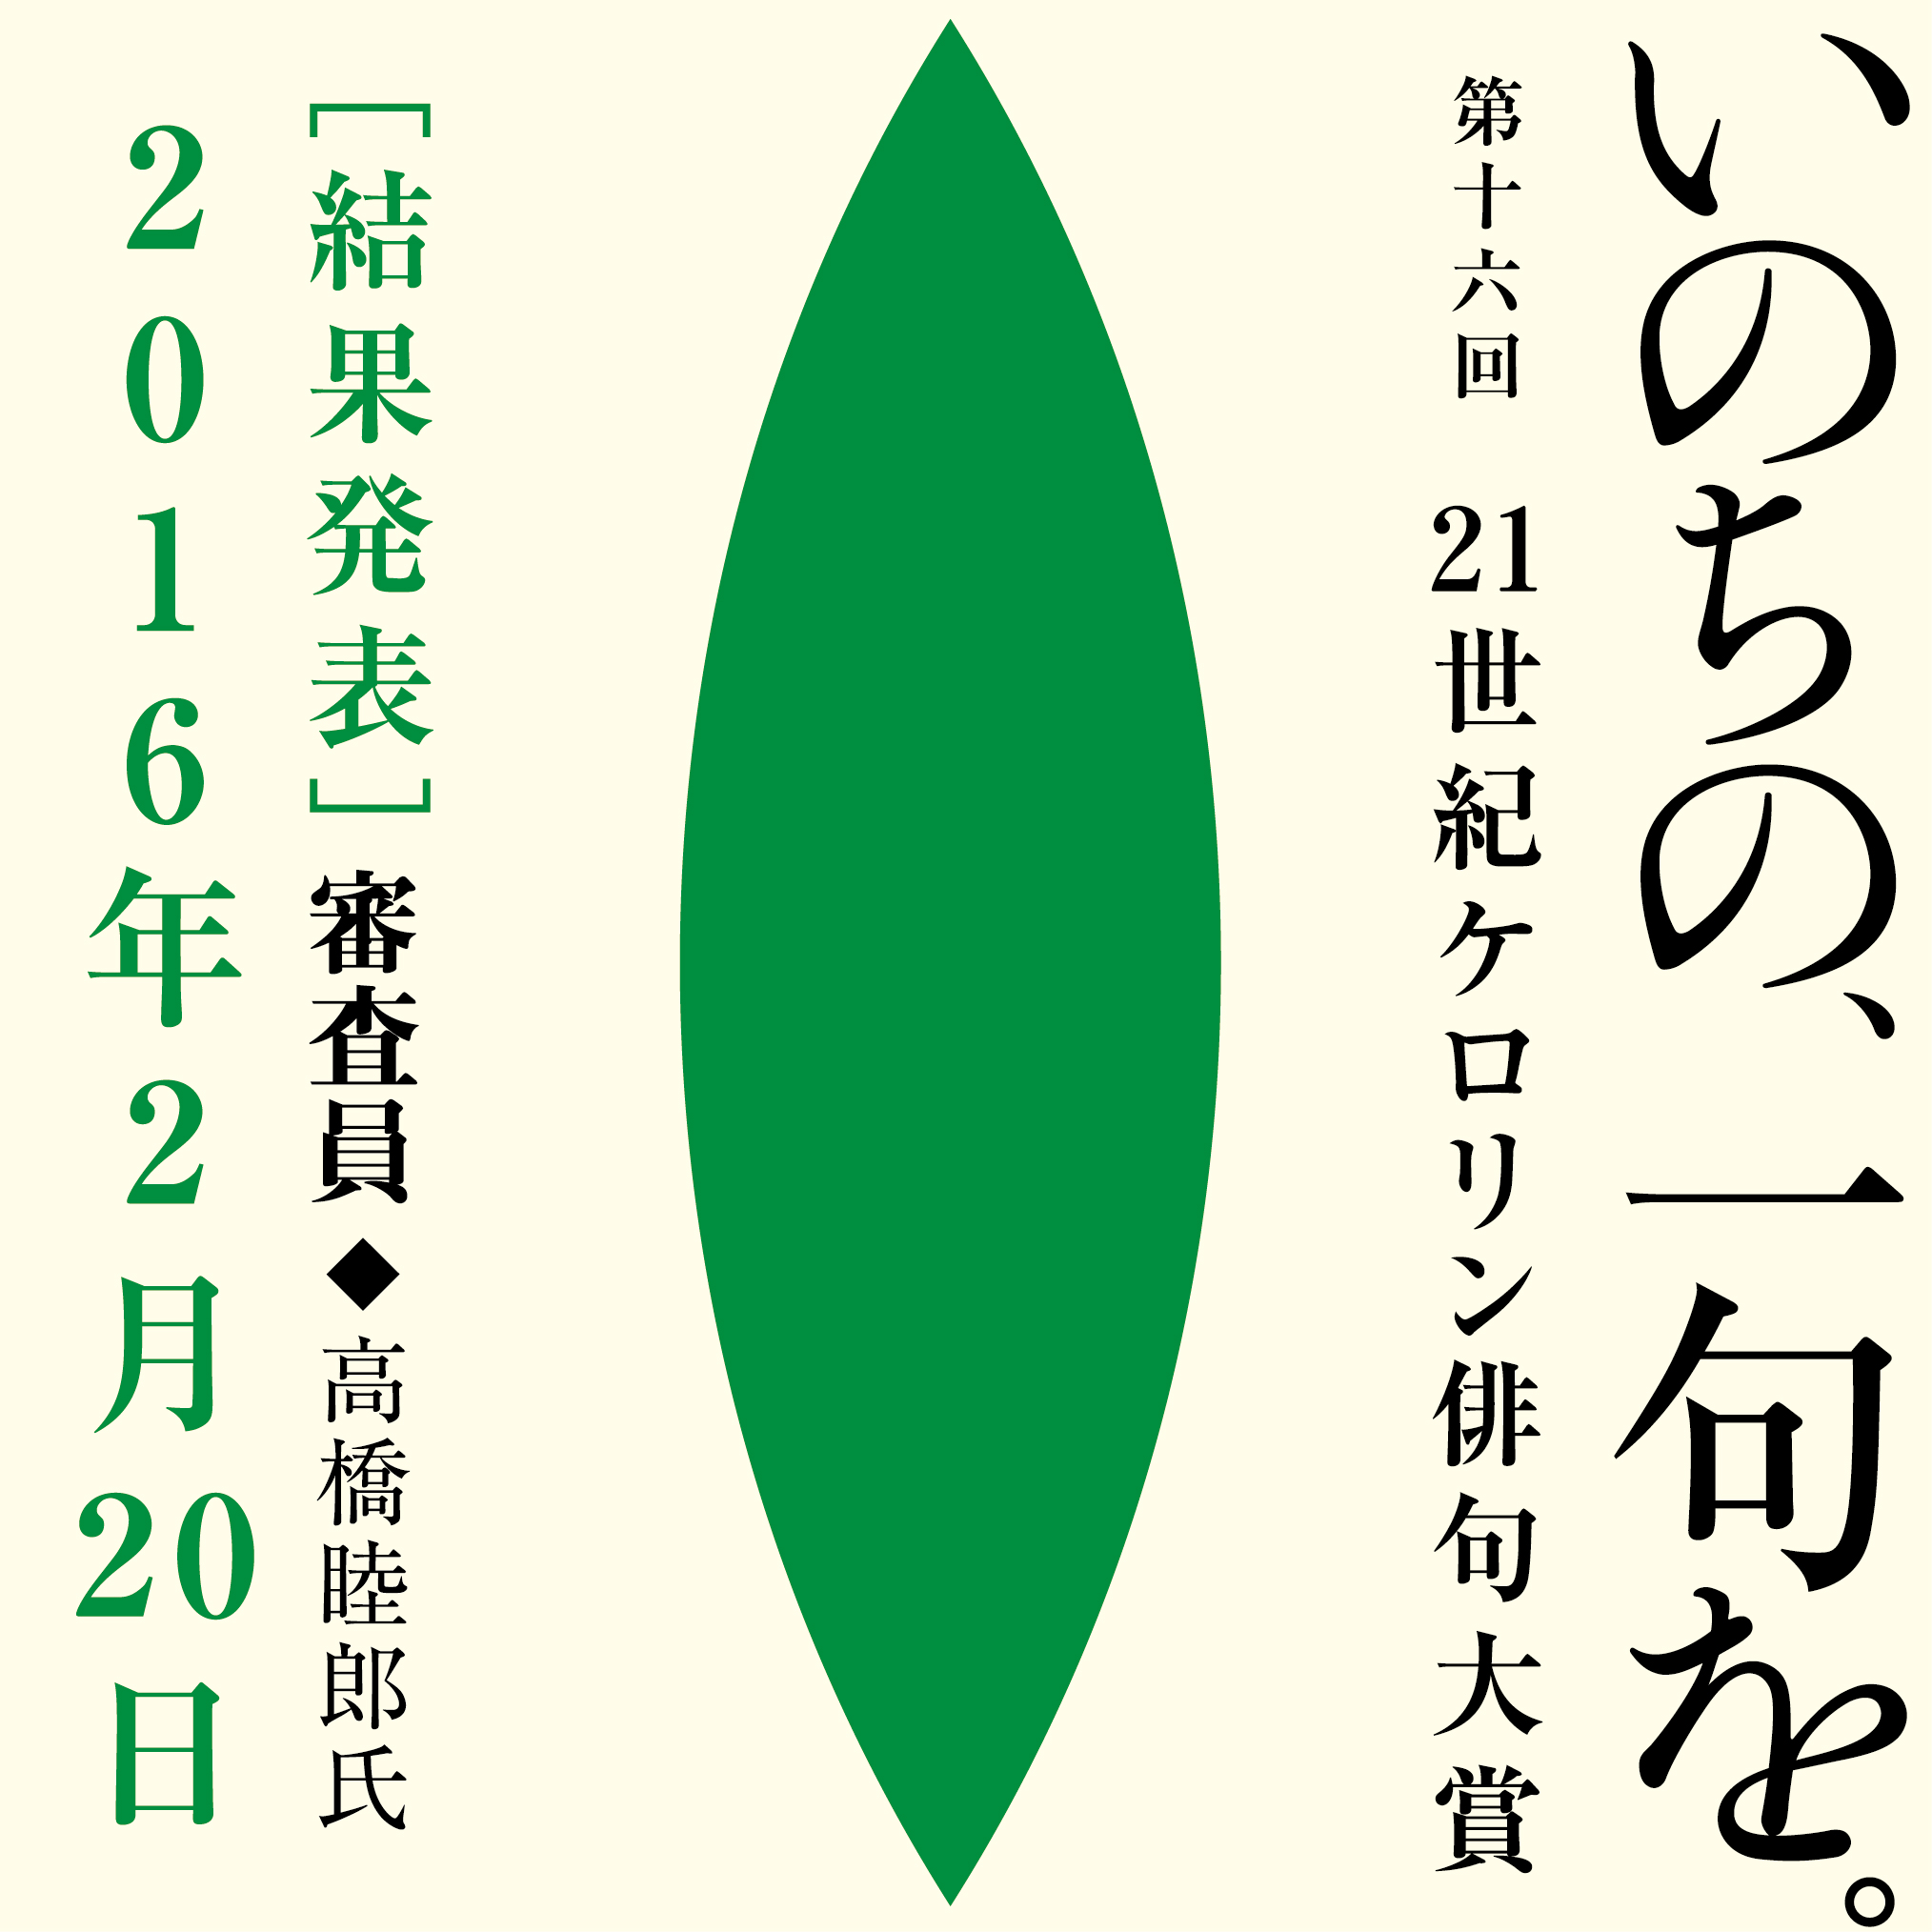 http://www.kerorin.com/topics/haiku_owari2015.jpg